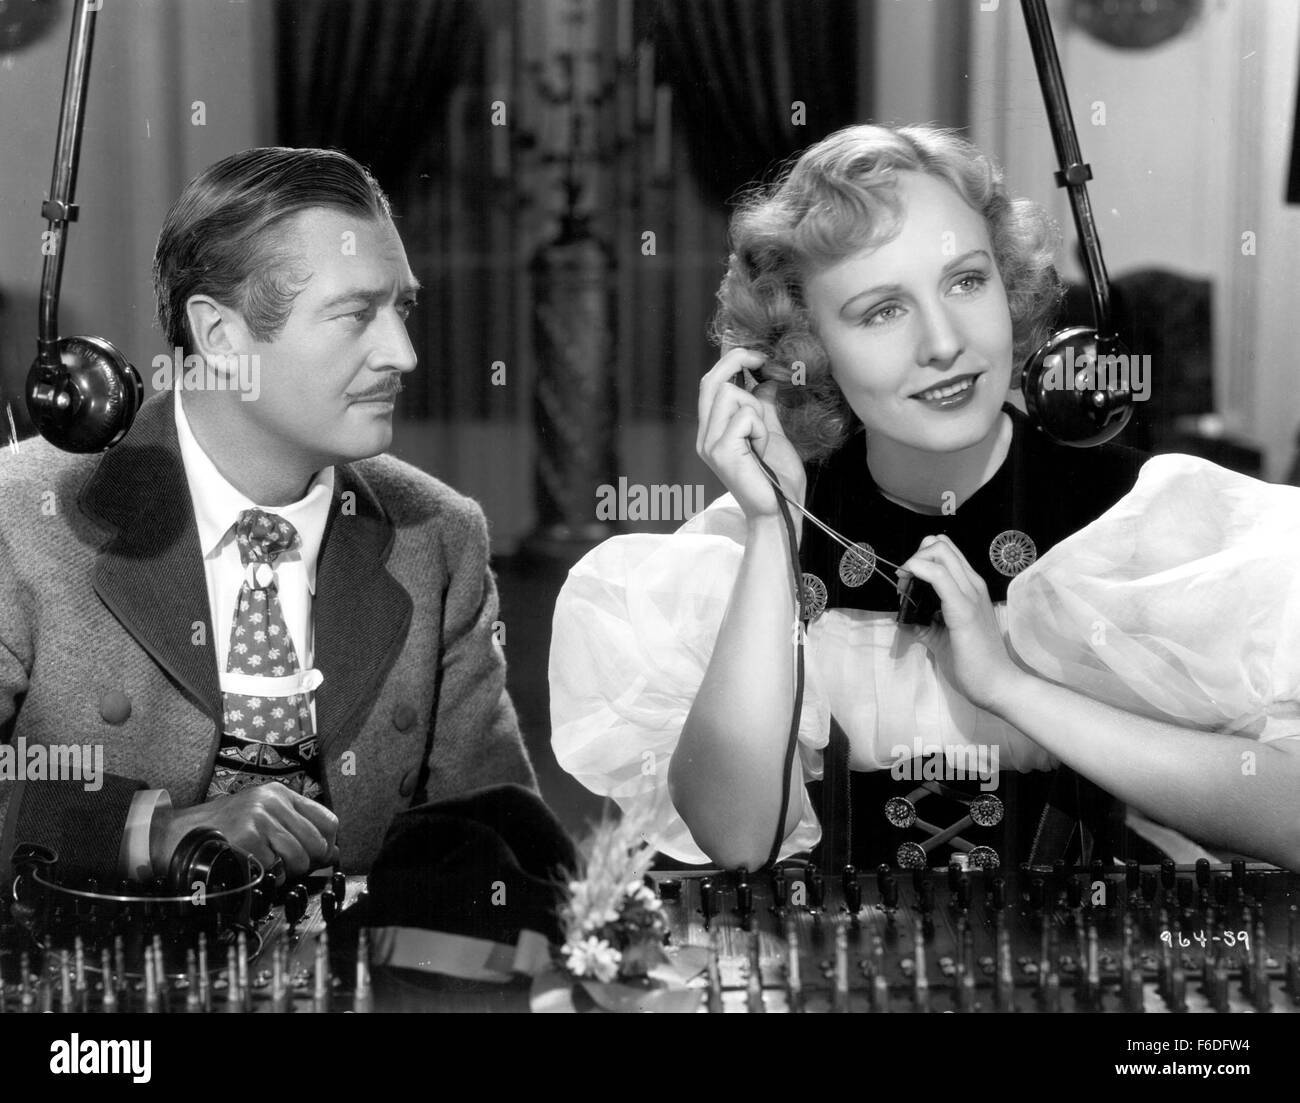 RELEASED: Feb 26, 1937 - Original Film Title: Espionage. PICTURED: EDMUND LOWE, MADGE EVANS. Stock Photo